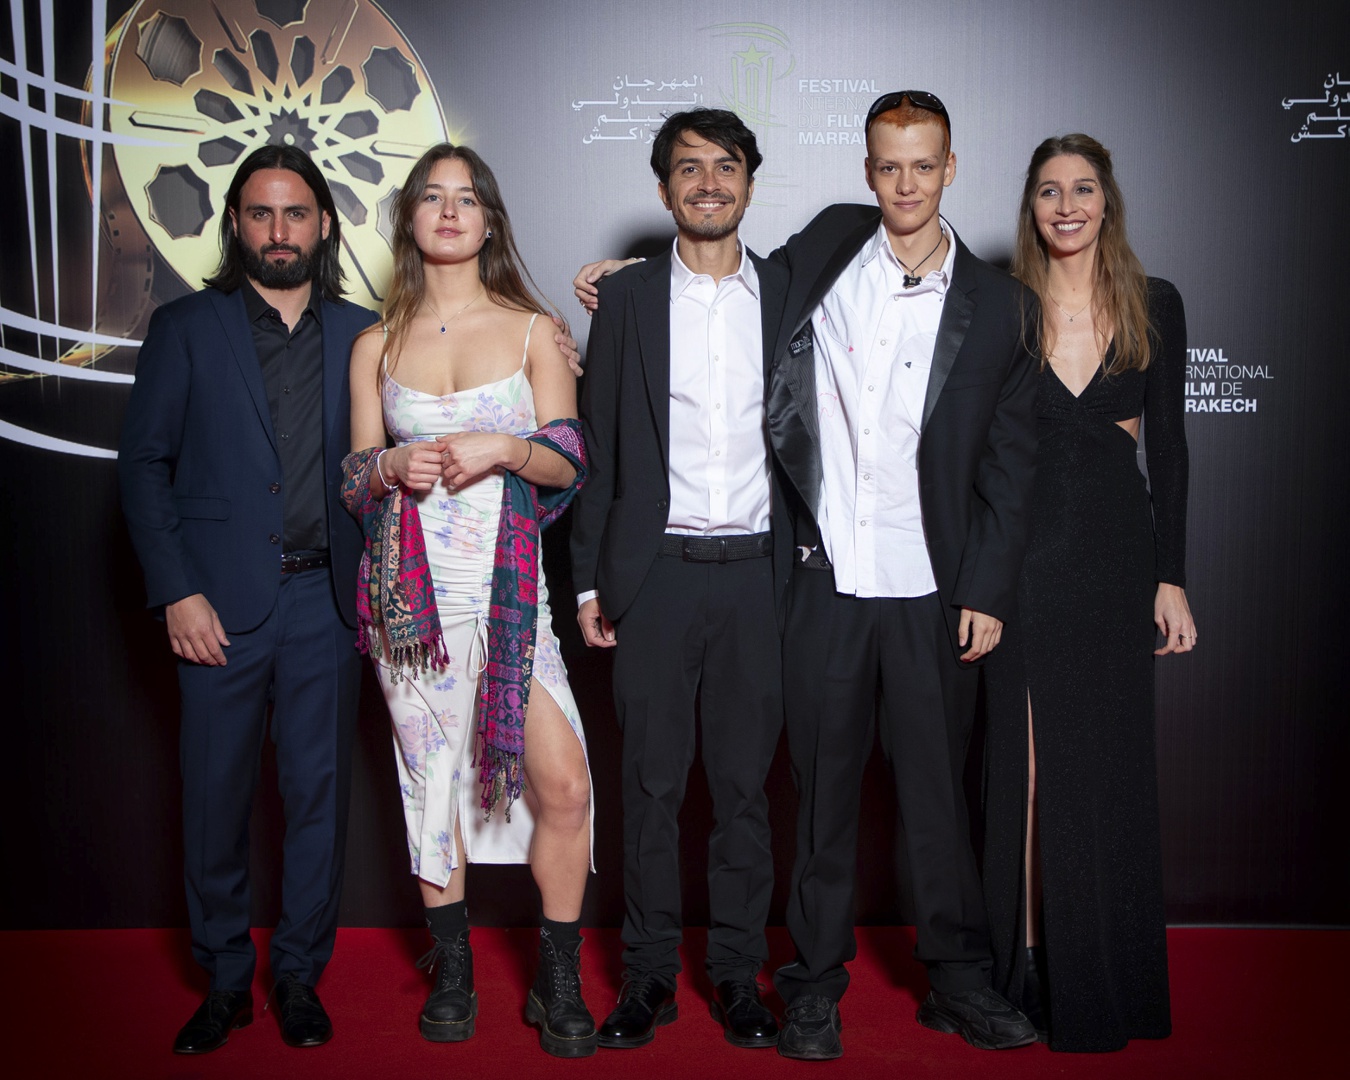 el director colombiano quebrada compite en marrakech con un film sobre su duelo familiar